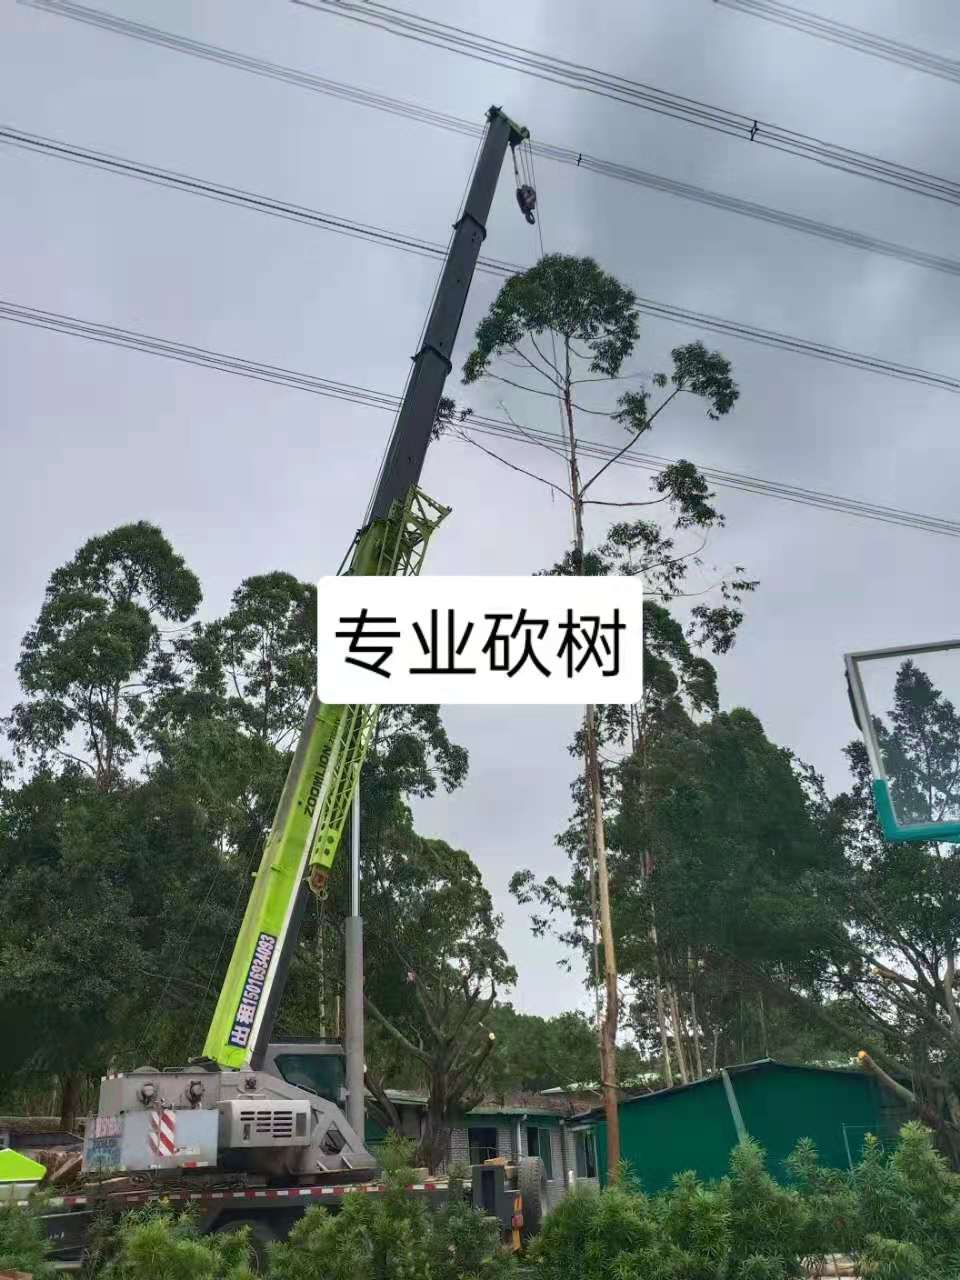 广州树木修剪工程队伍价格   广州树木修剪电话